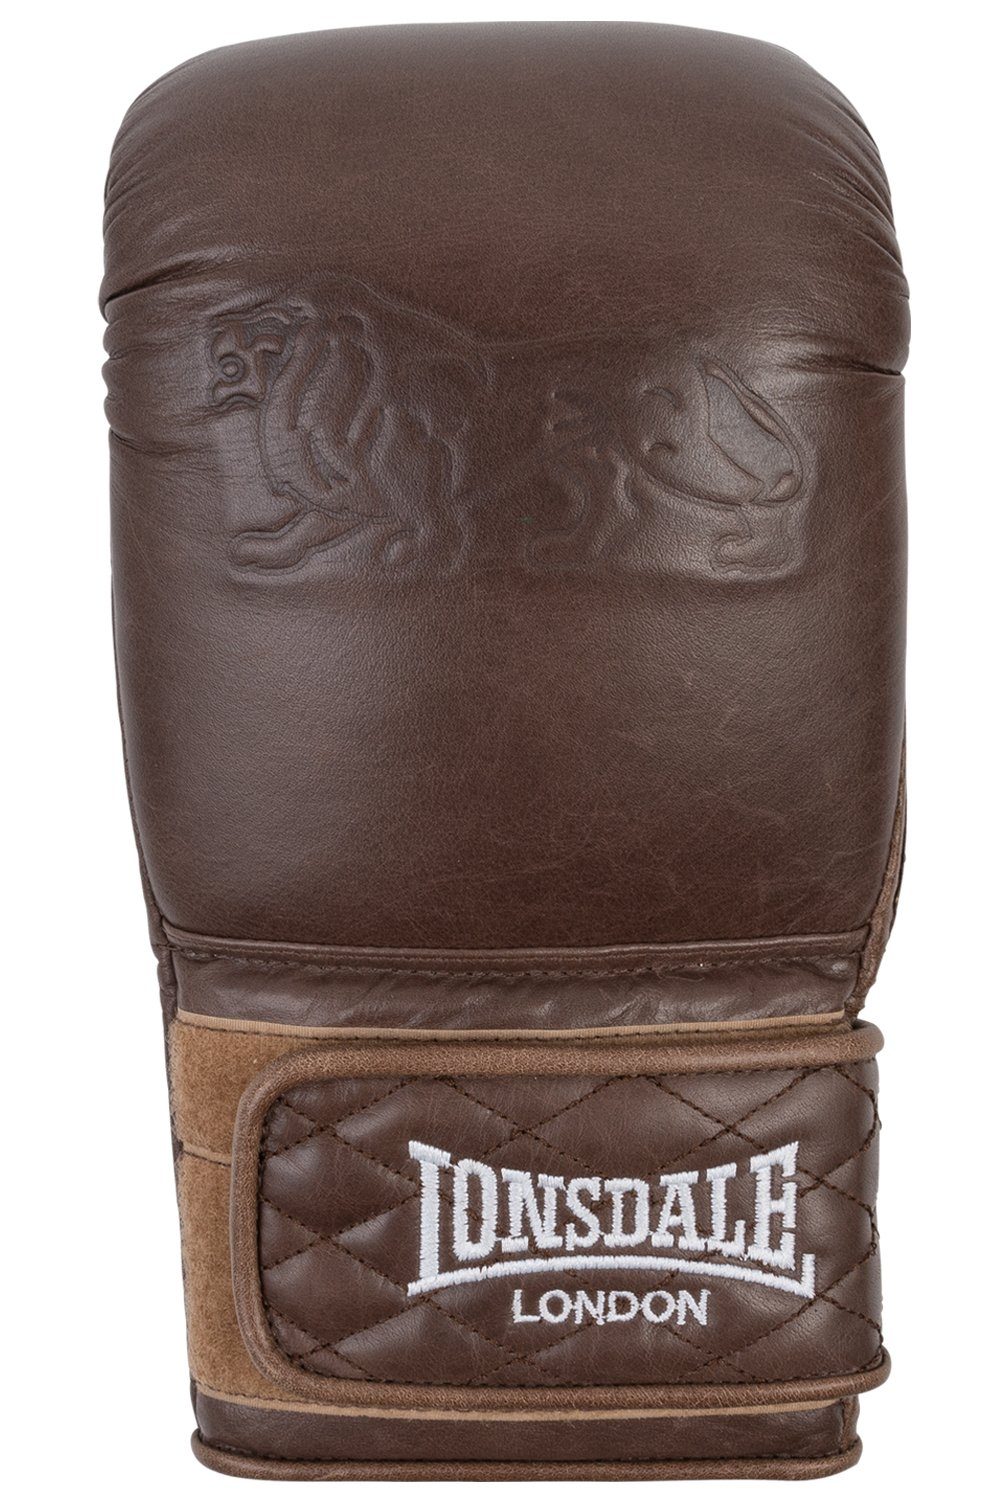 Lonsdale Boxhandschuhe VINTAGE GLOVES BAG